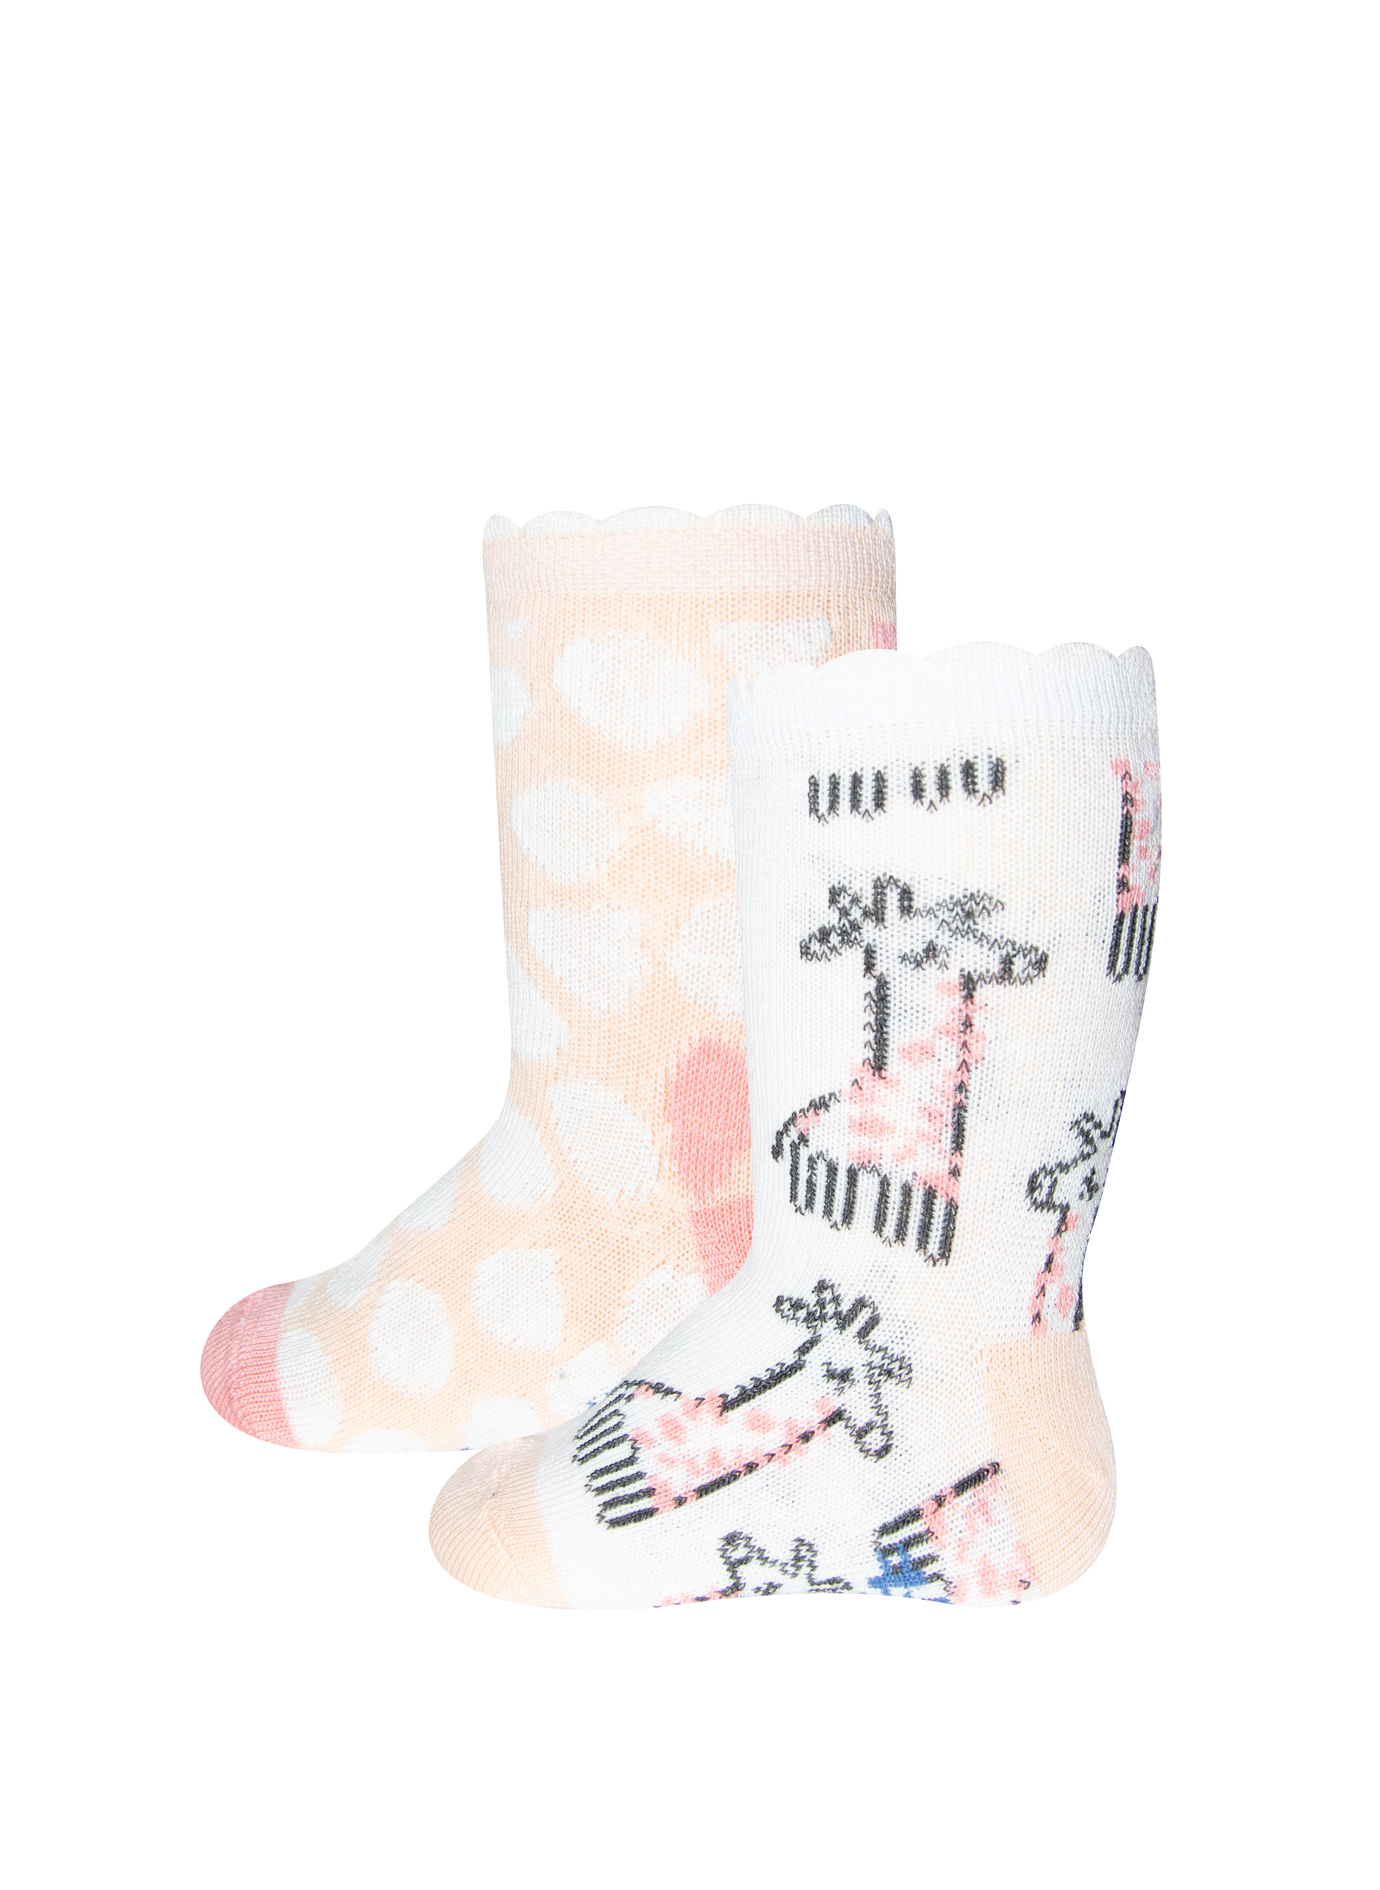 Mädchen-Socken (Doppelpack) Weiß und Rosa